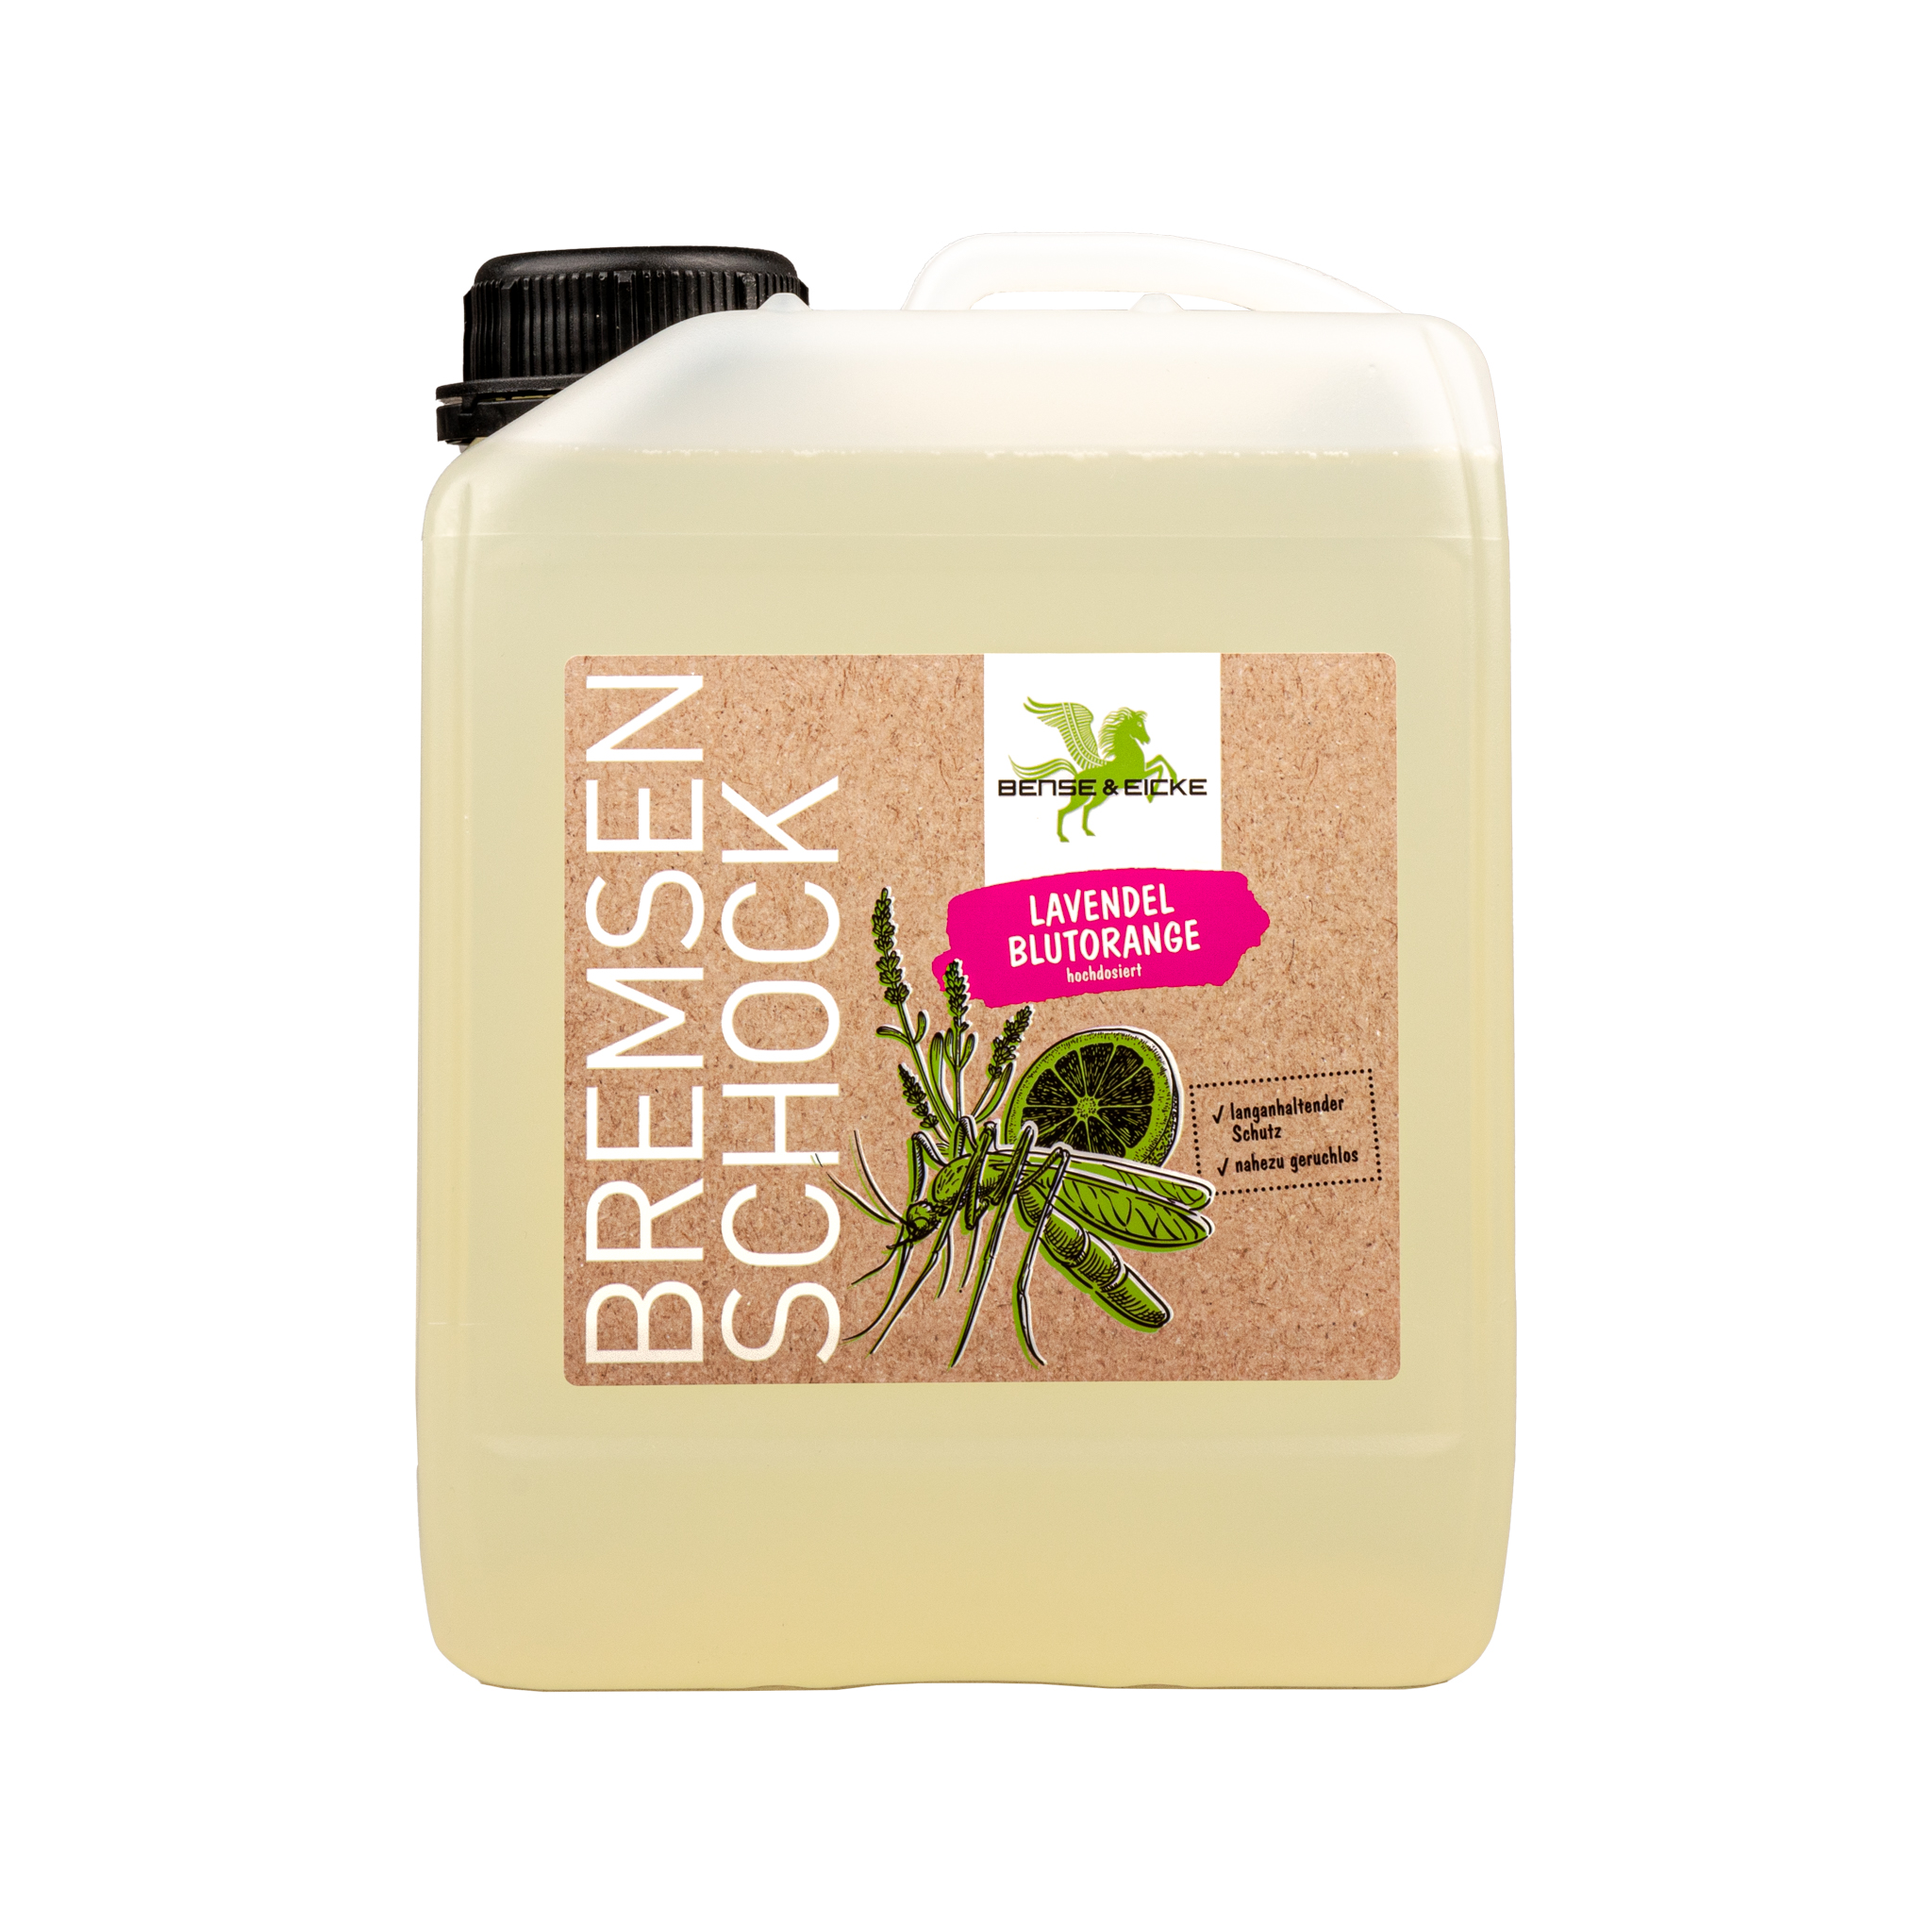 Bense & Eicke | BremsenSchock Lavendel Blutorange - Insektenschutz mit frischem Duft und 20,6% Icaridin - 2,5 L